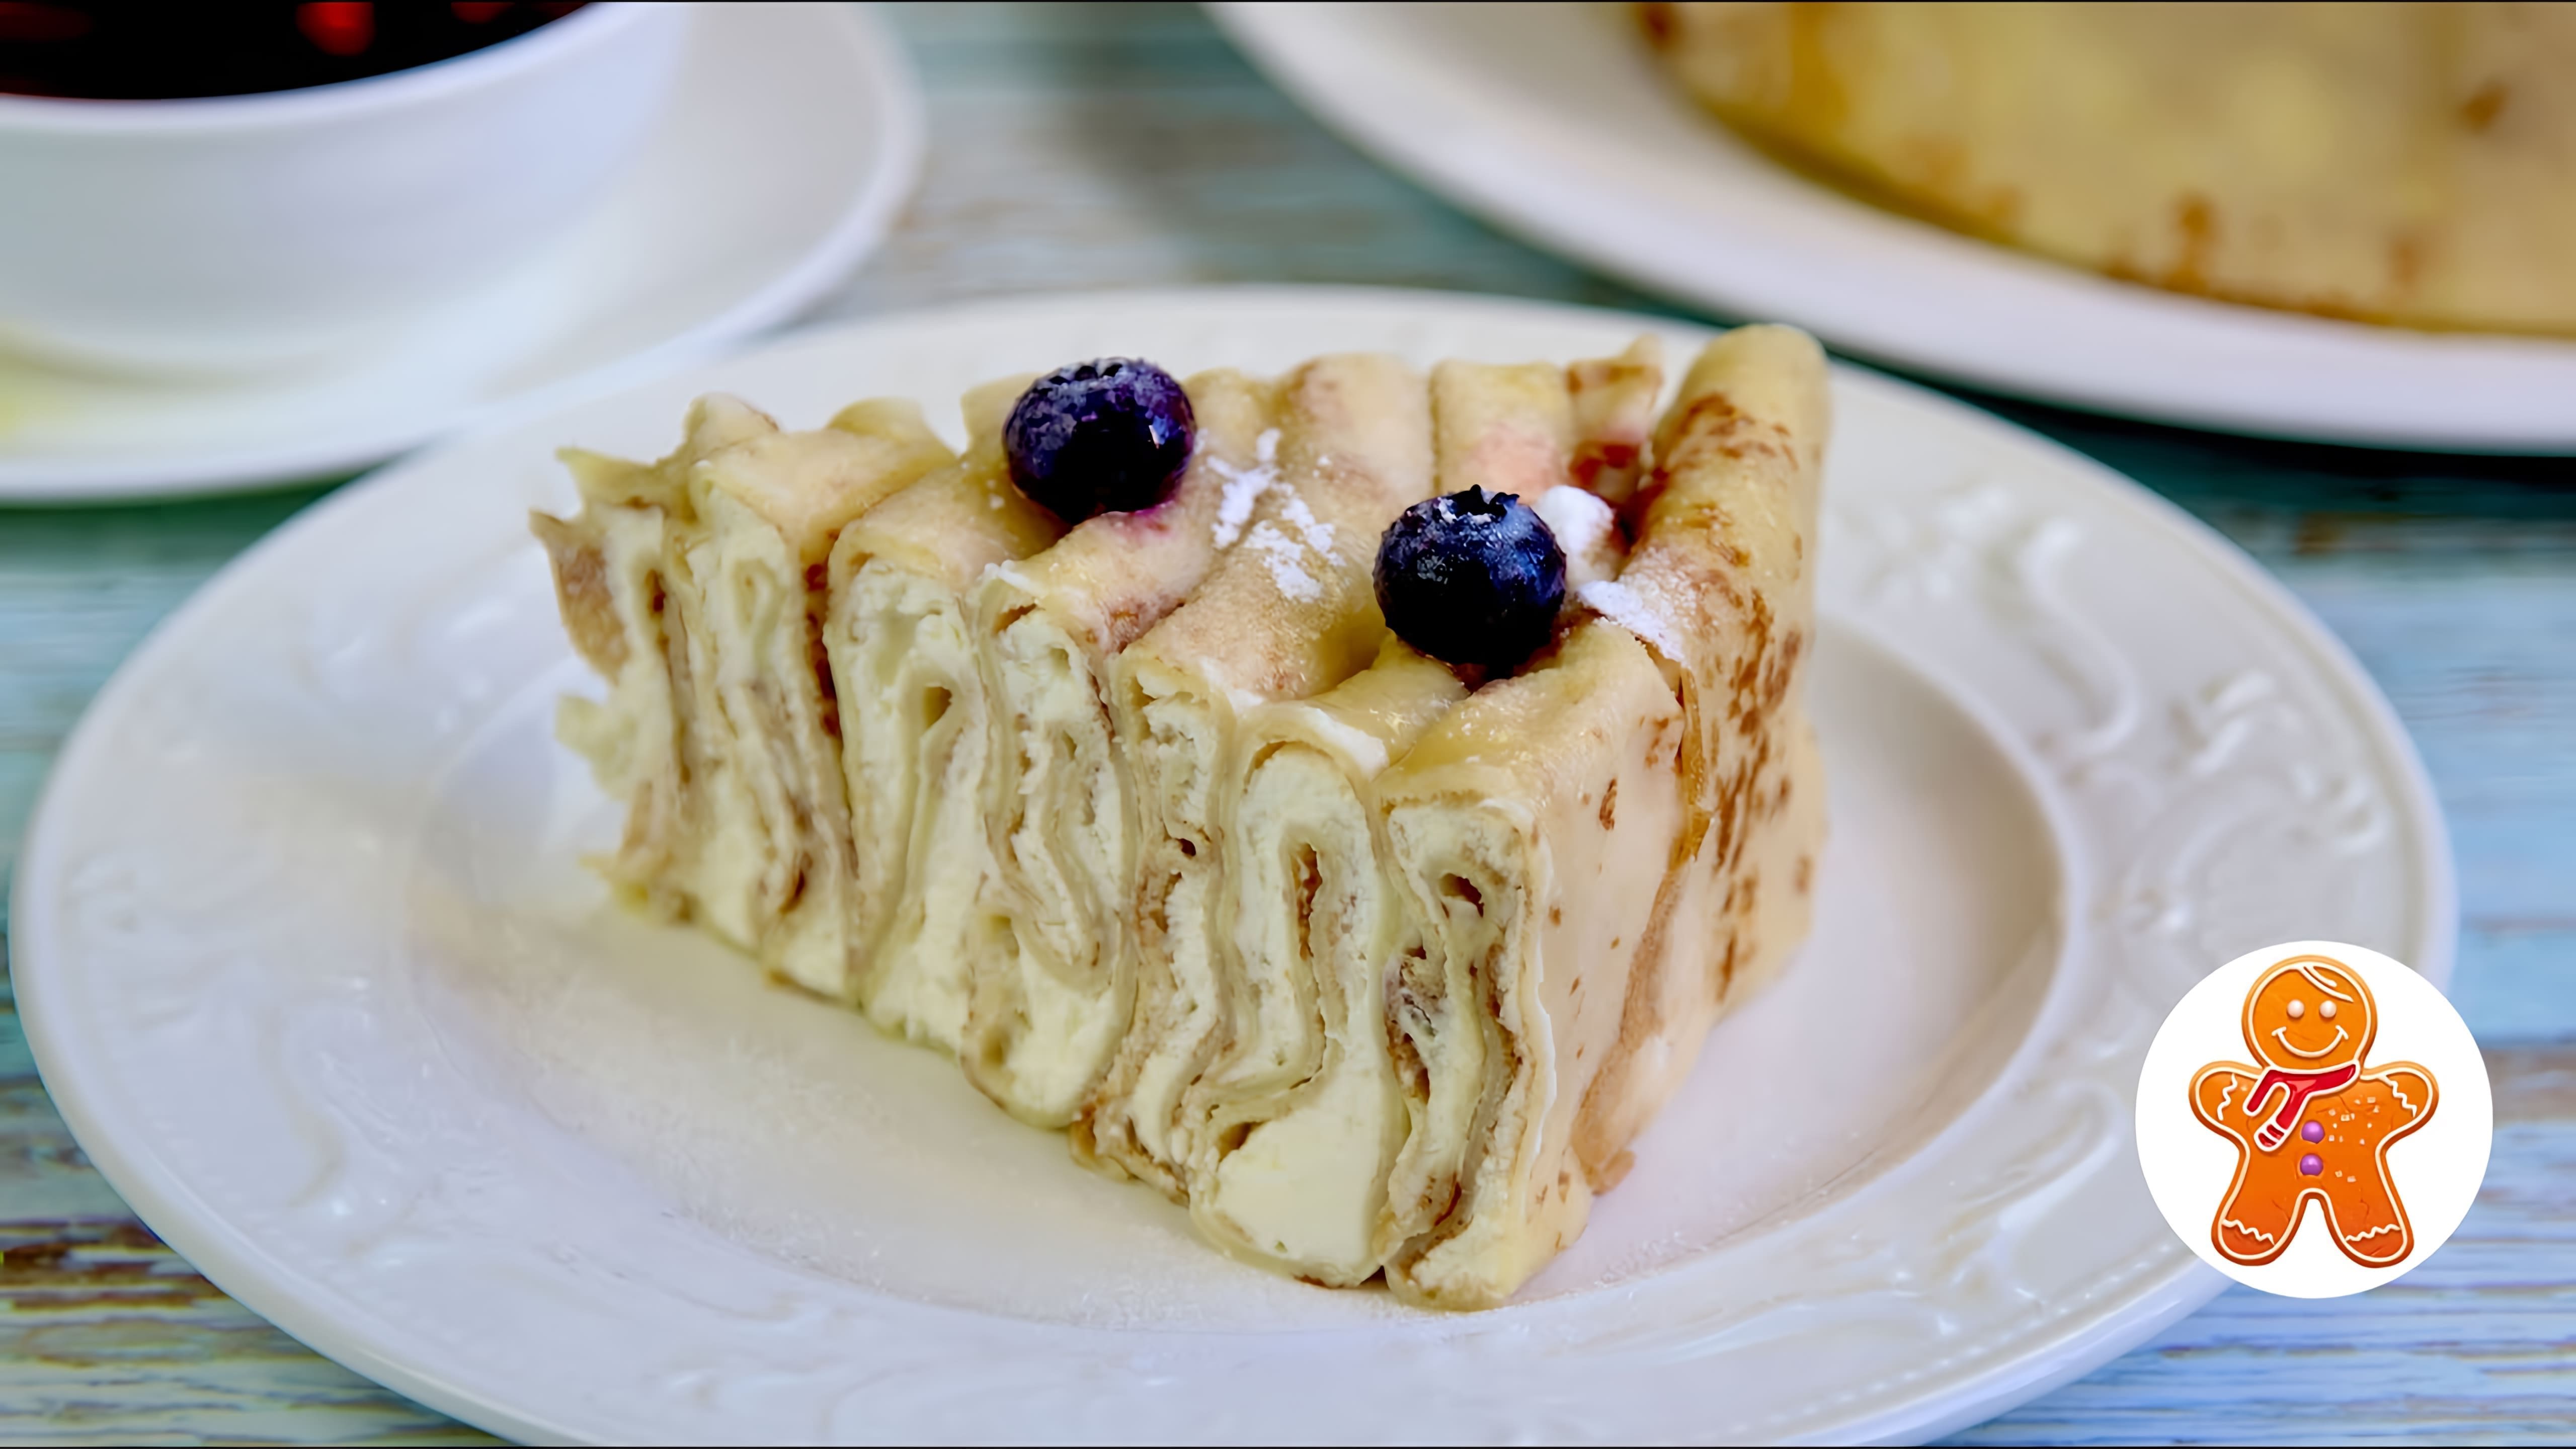 В этом видео демонстрируется рецепт приготовления медового блинного торта